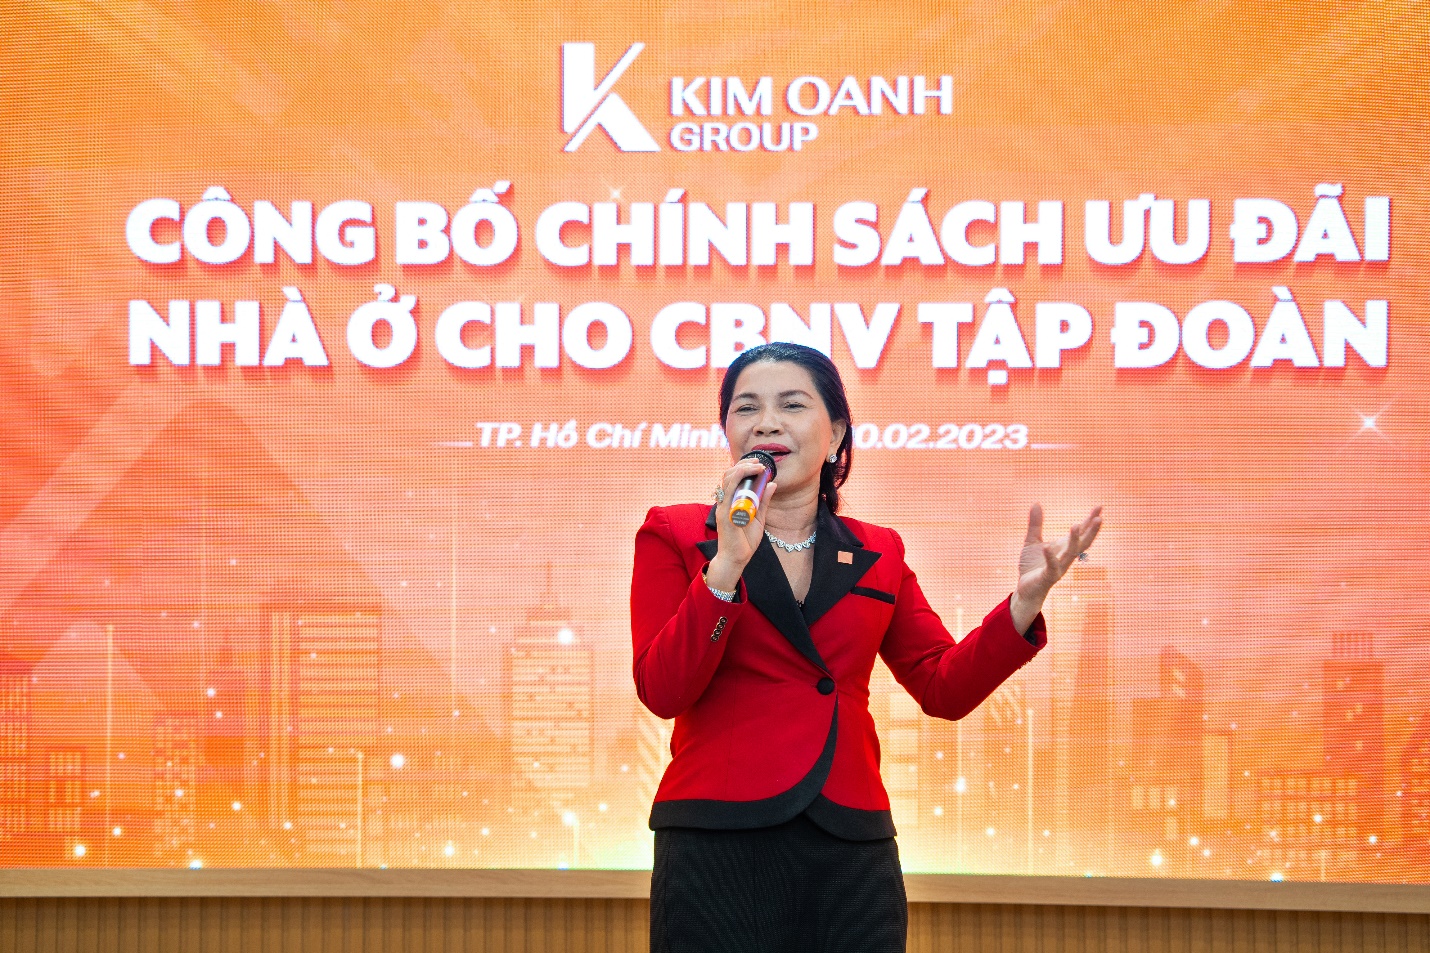 Bà Đặng Thị Kim Oanh - Chủ tịch Hội đồng quản trị kiêm Tổng giám đốc Kim Oanh Group - công bố chính sách hỗ trợ nhà ở cho nhân viên Tập đoàn